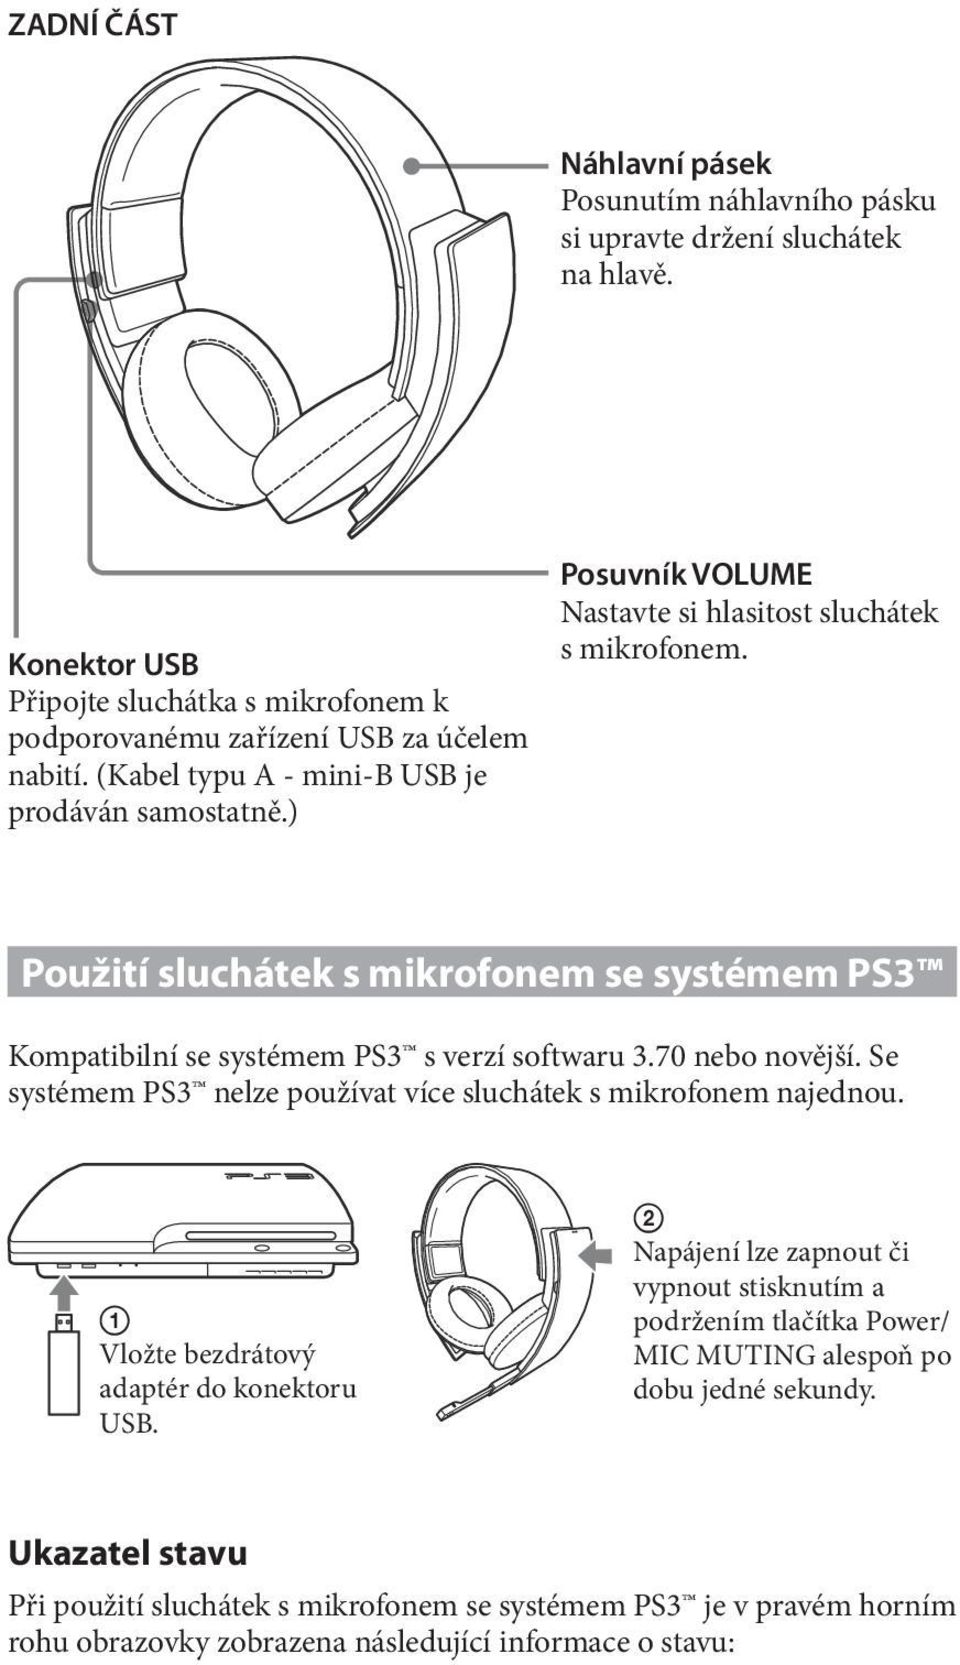 Použití sluchátek s mikrofonem se systémem PS3 Kompatibilní se systémem PS3 s verzí softwaru 3.70 nebo novější. Se systémem PS3 nelze používat více sluchátek s mikrofonem najednou.